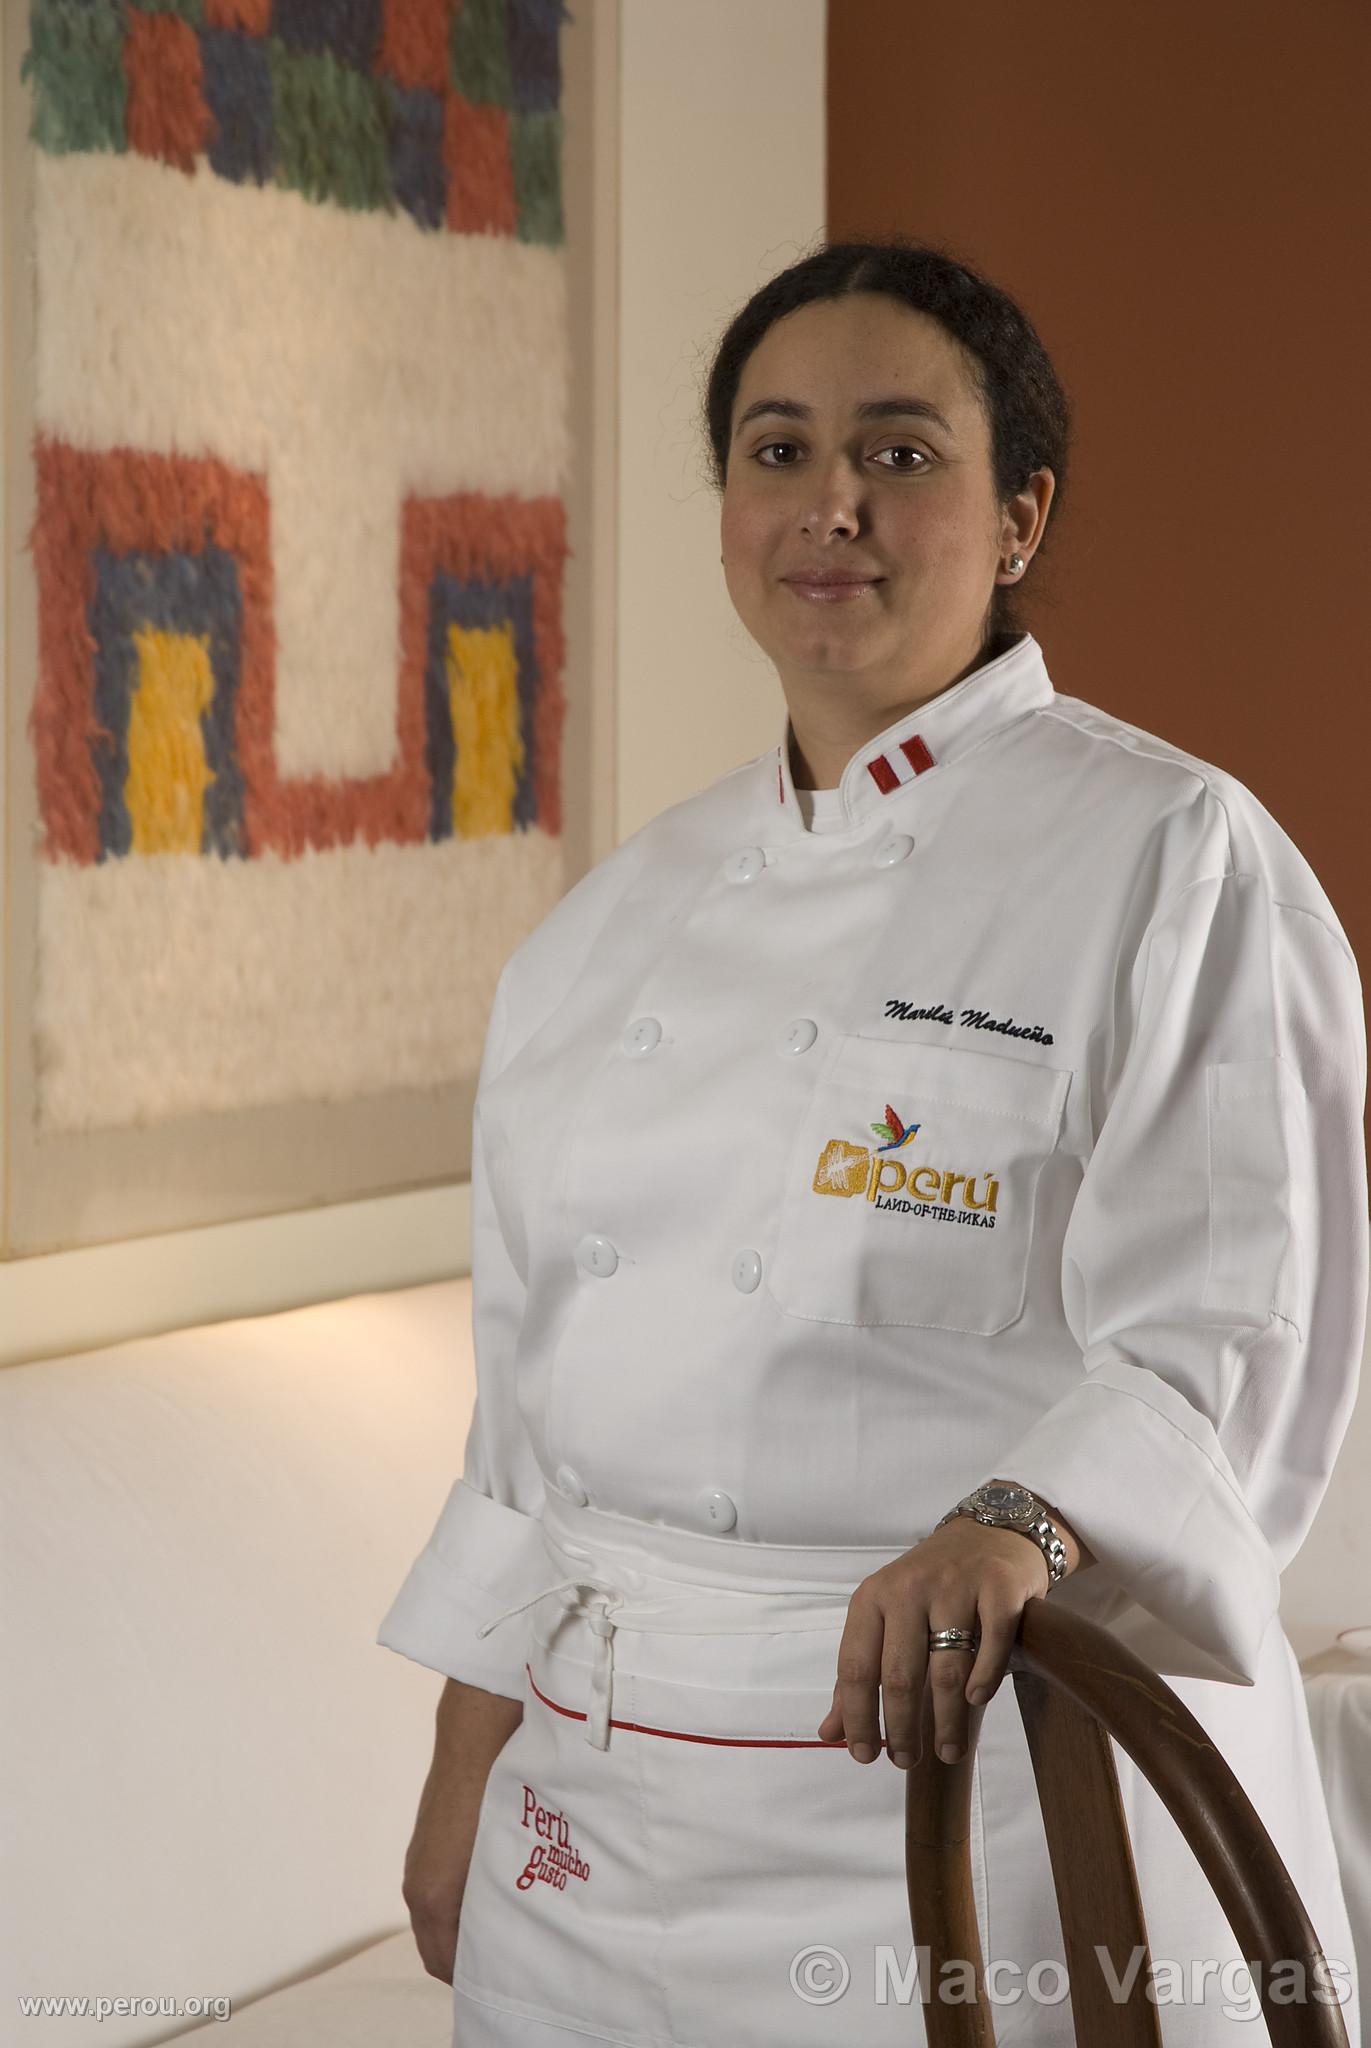 Chef Maril Madueo